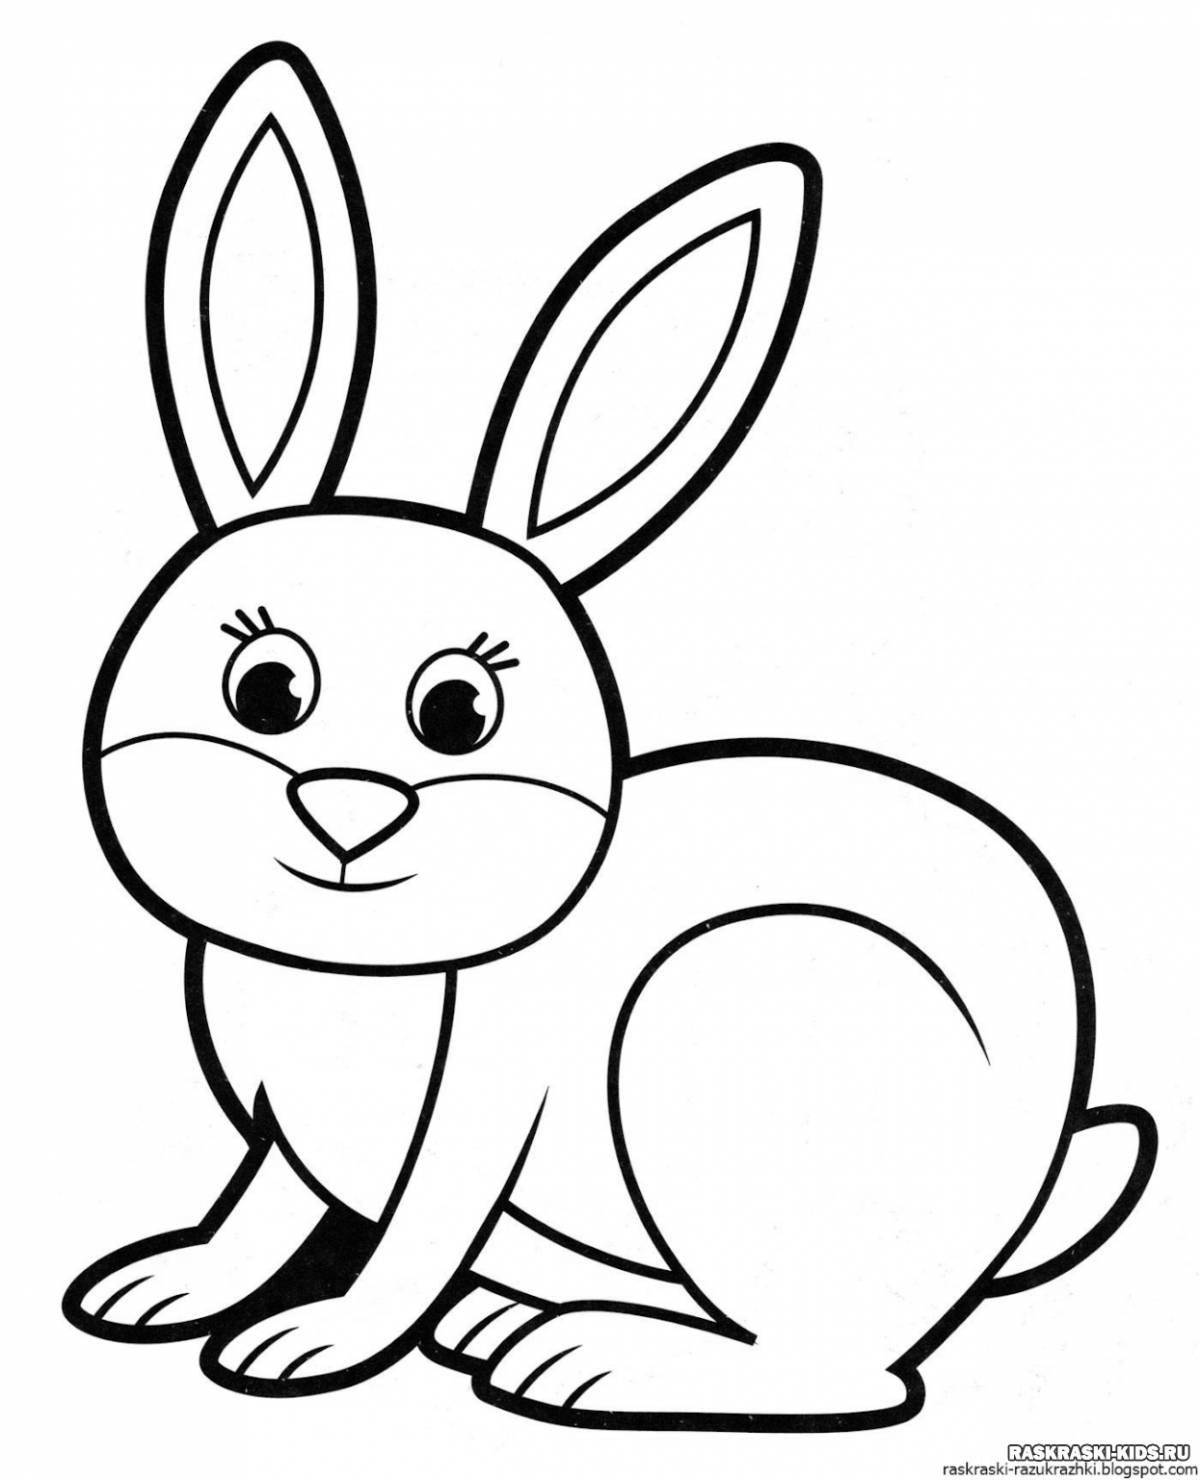 Раскраска happy bunny для детей